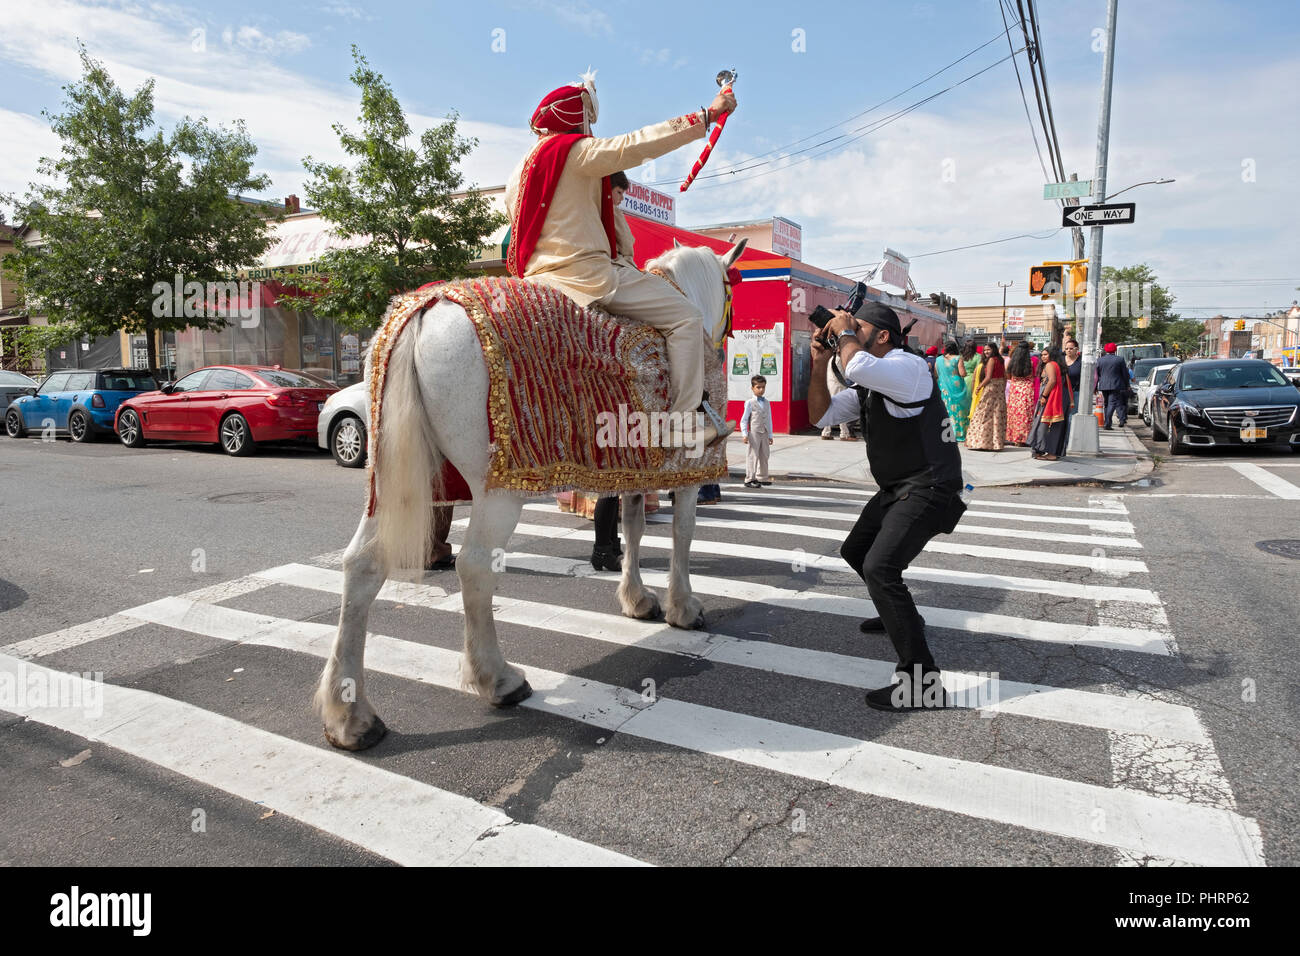 Selon la tradition, un Sikh groom sur un cheval blanc à la tête son mariage à la suite d'une procession de sa famille et amis. À Richmond Hill, Queens, NY Banque D'Images